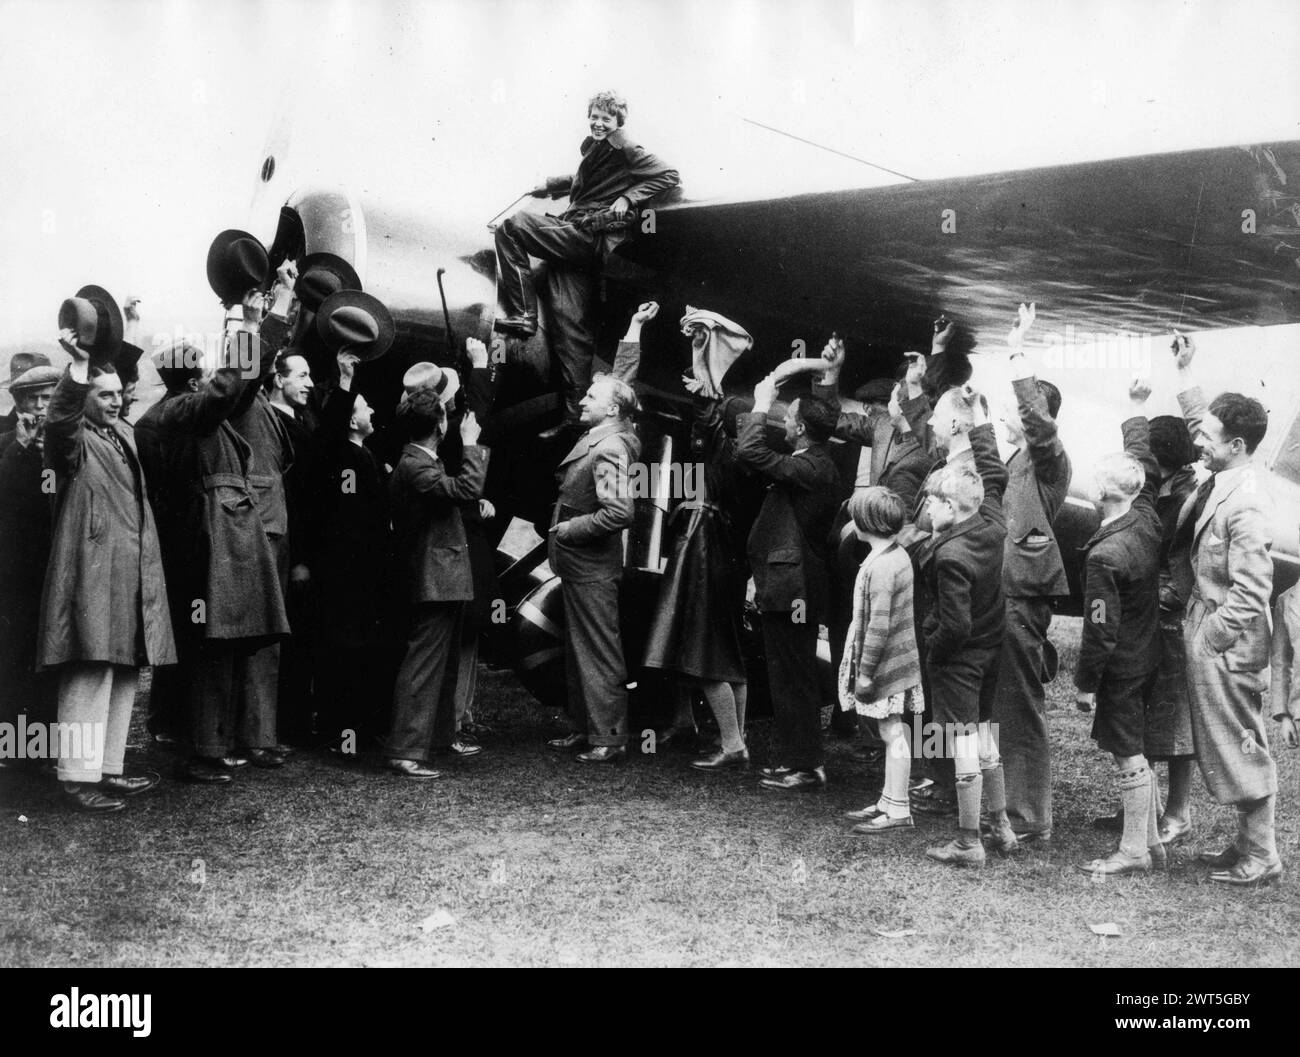 21. Mai 1932, Londonderry, Nordirland: Die Fliegerin AMELIA EARHART, die erste Frau, die allein über den Atlantik geflogen ist, wird von der Menge bejubelt, nachdem sie auf einem Feld in Culmore in der Nähe von Derry in Nordirland angekommen ist. (Kreditbild: ¬ © Keystone Press Agency/ZUMA Press Wire) NUR REDAKTIONELLE VERWENDUNG! Nicht für kommerzielle ZWECKE! Stockfoto